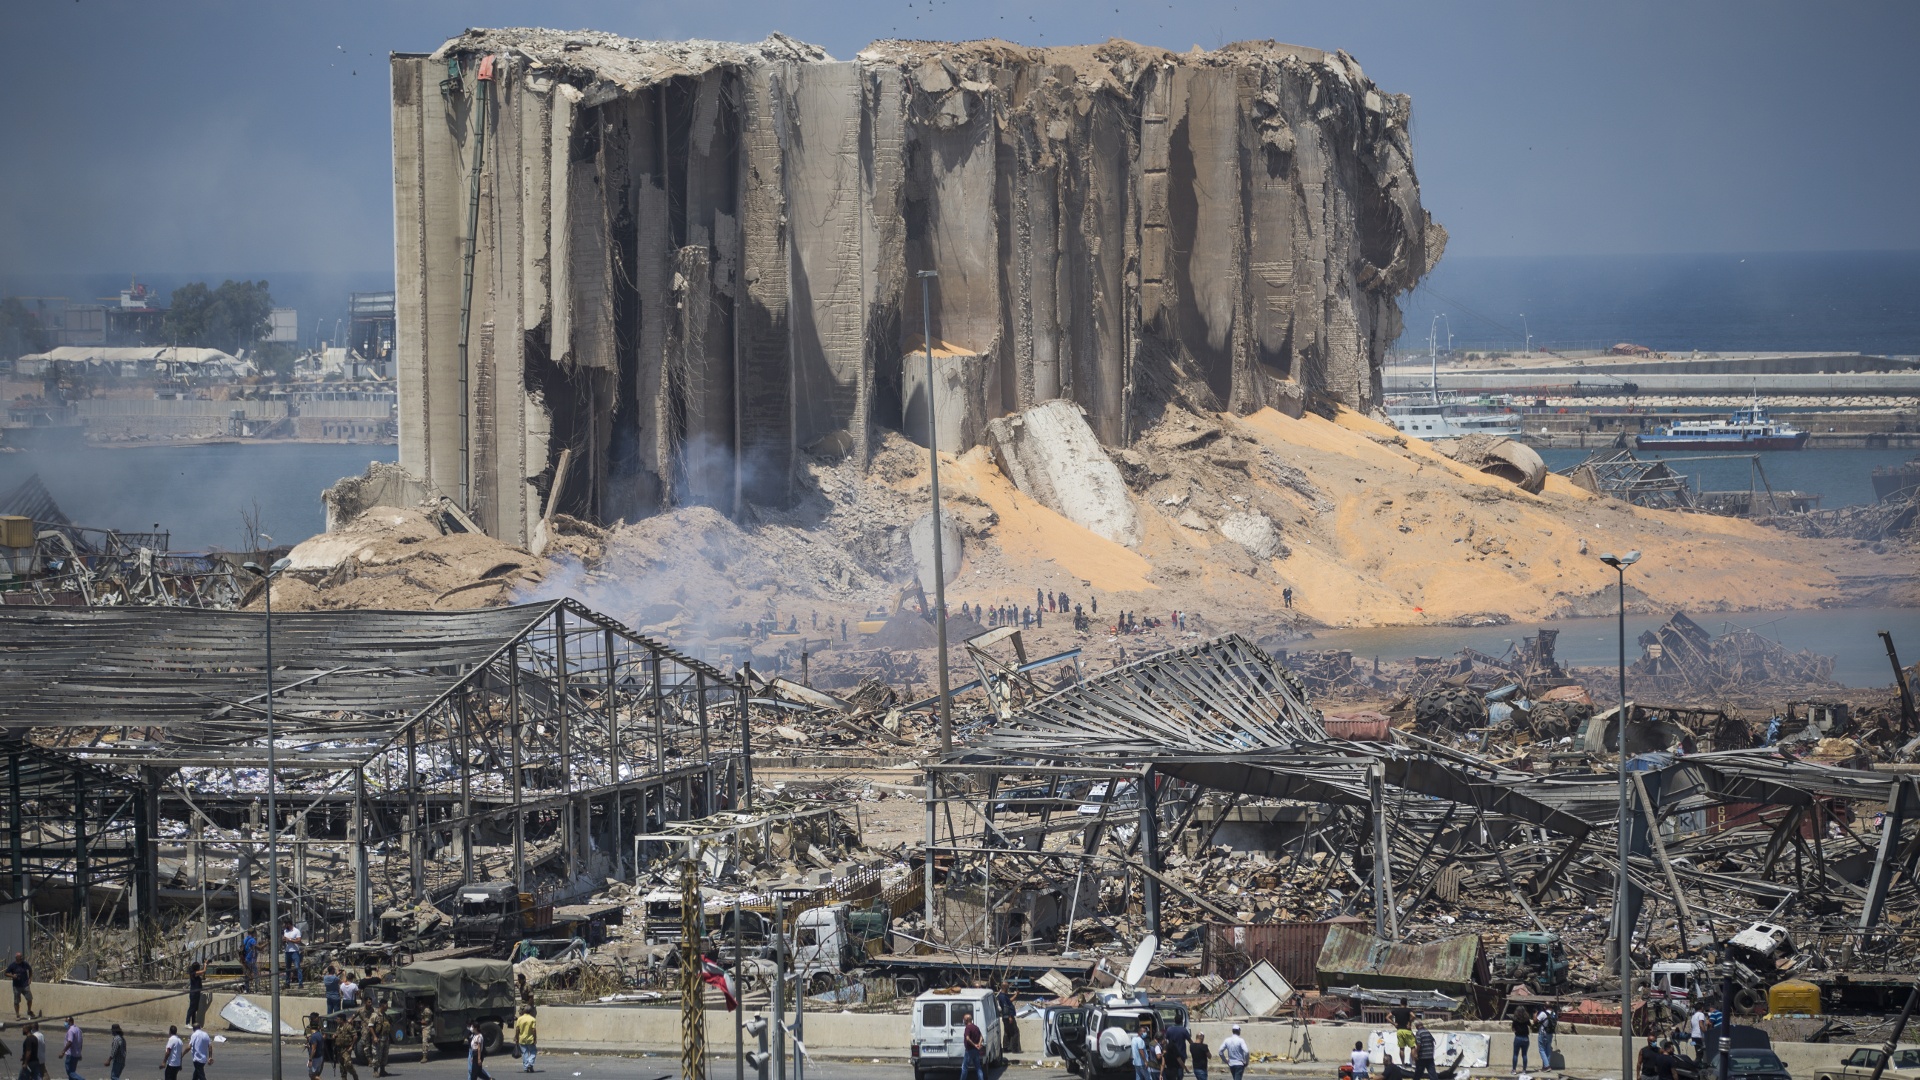 В годовщину взрывов в Бейруте обрушилось зернохранилище